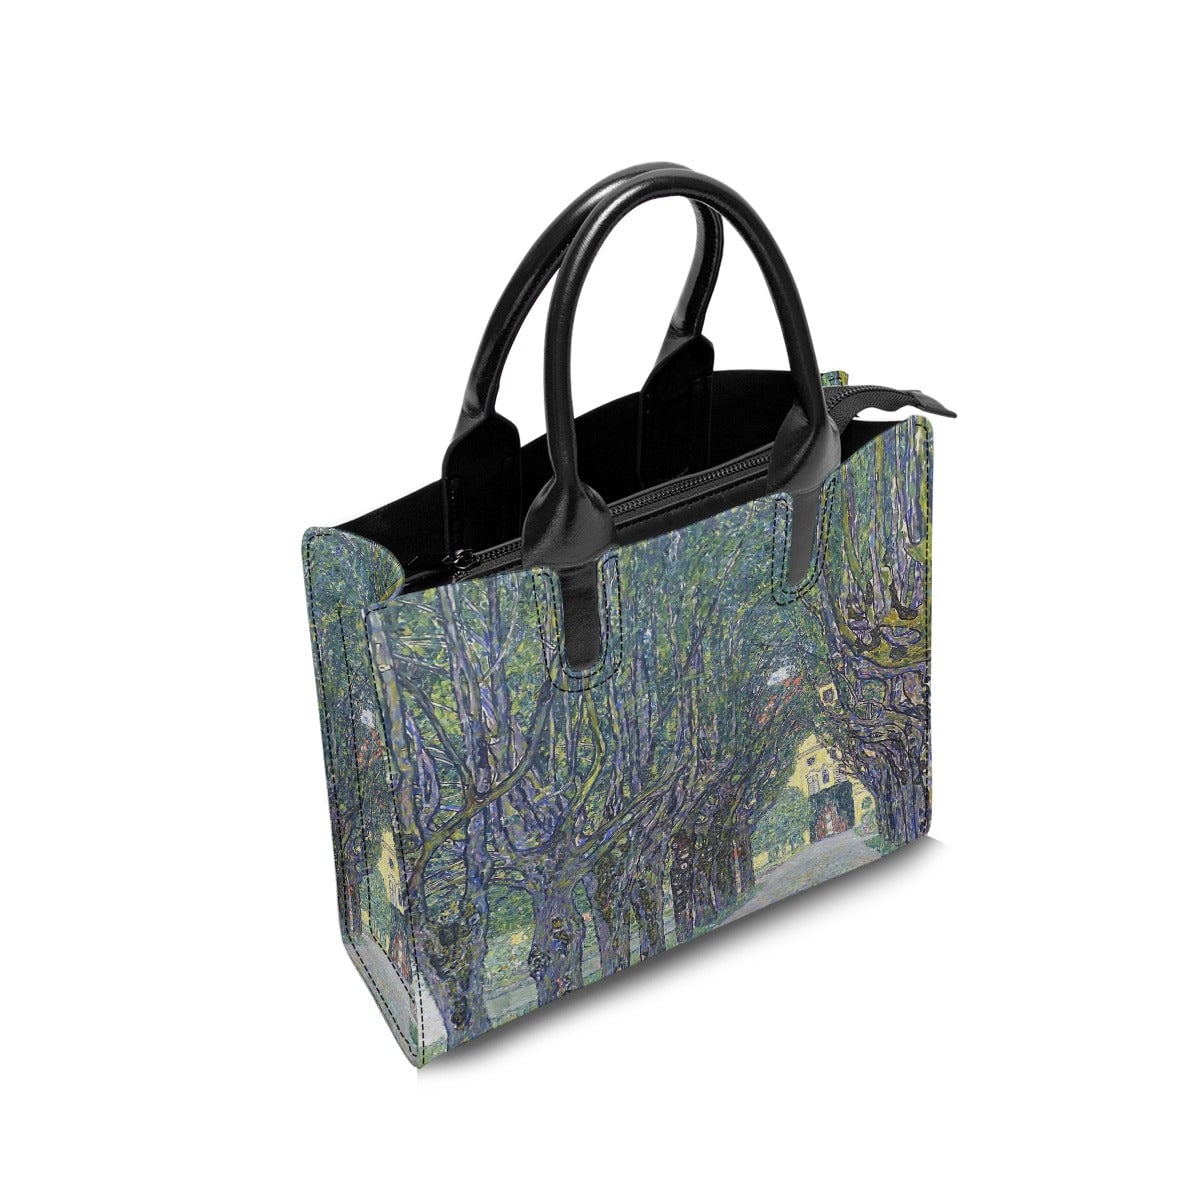 Allee at Schloss Kammer Gustav Klimt Art Fashion Handbag